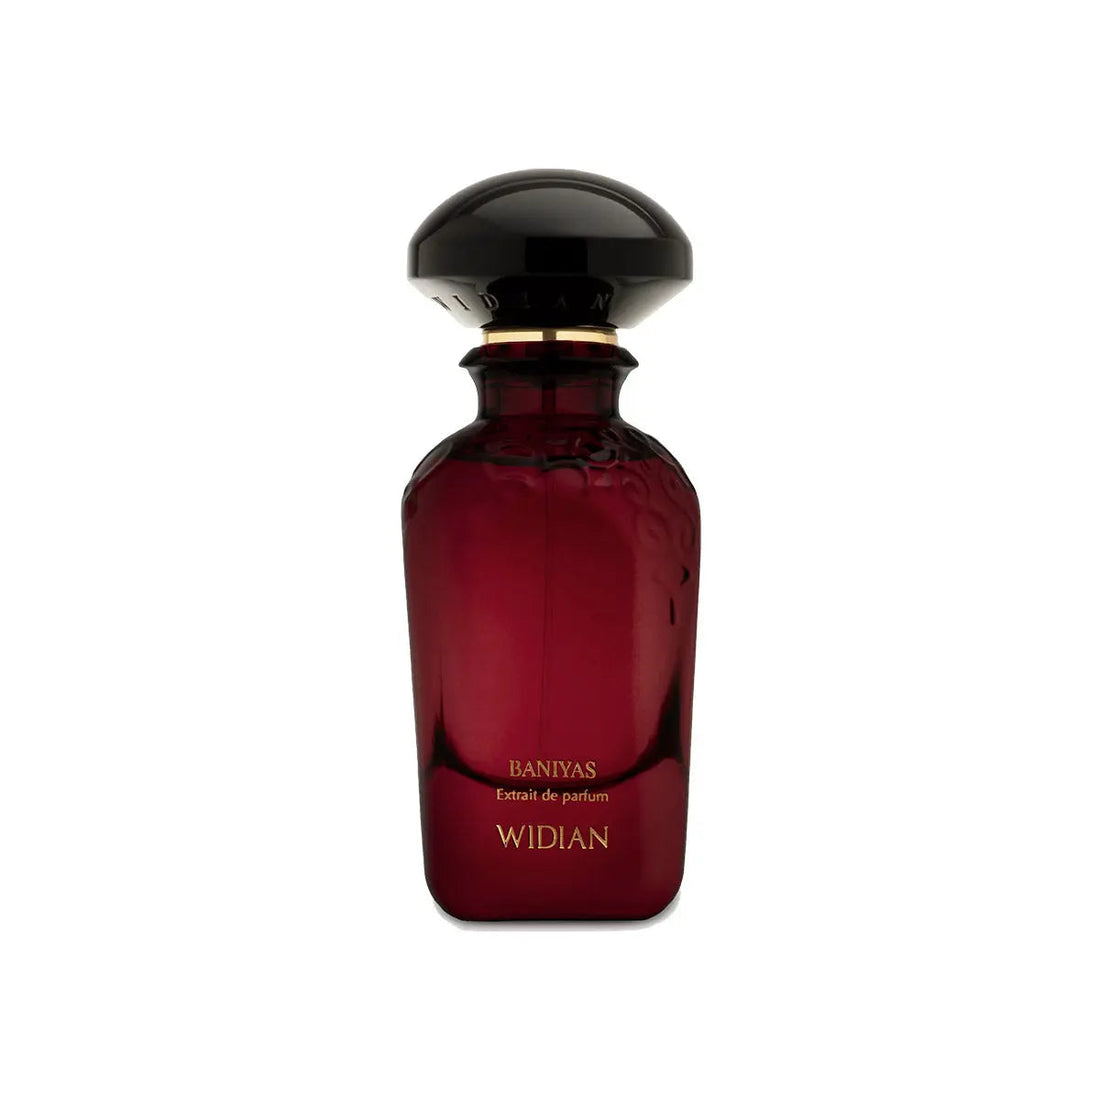 Extrait de Parfum Baniyas Widian - 50 ml